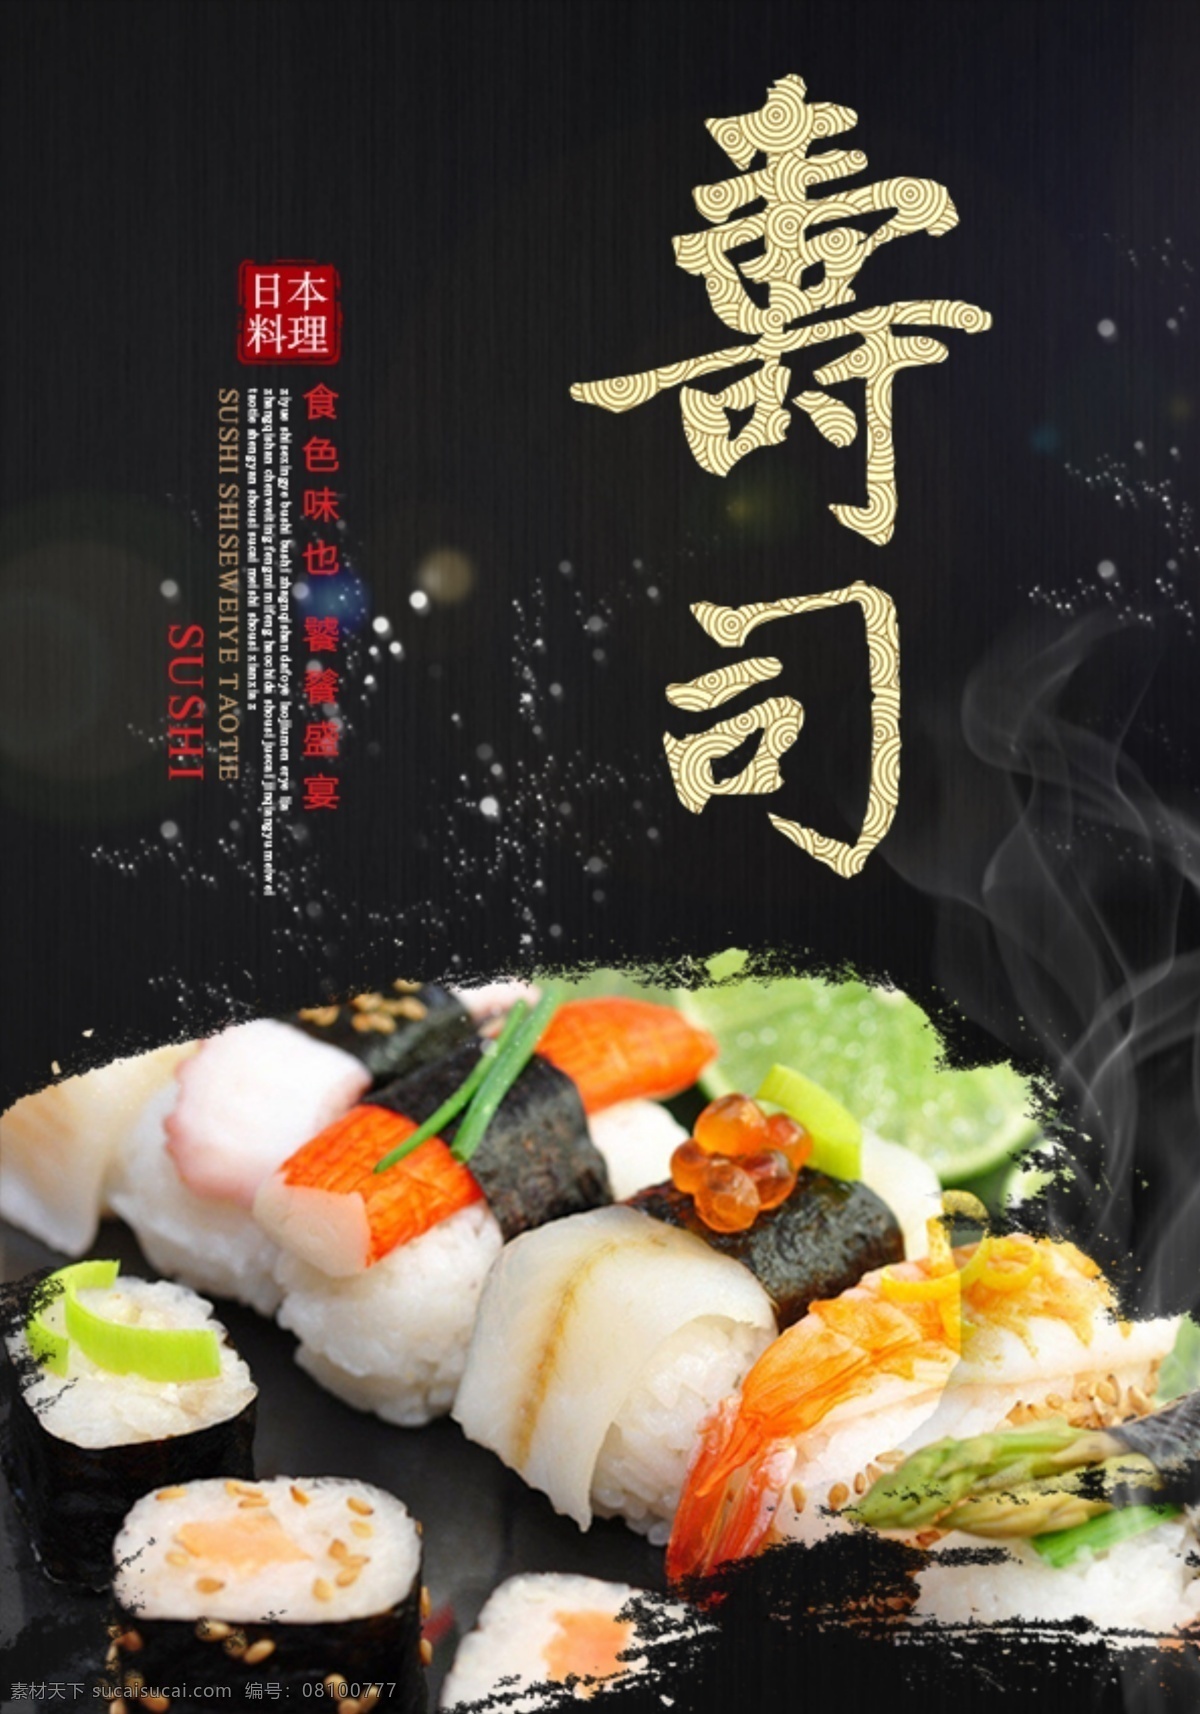 日式 寿司 料理 食 材 海报 展板 食材